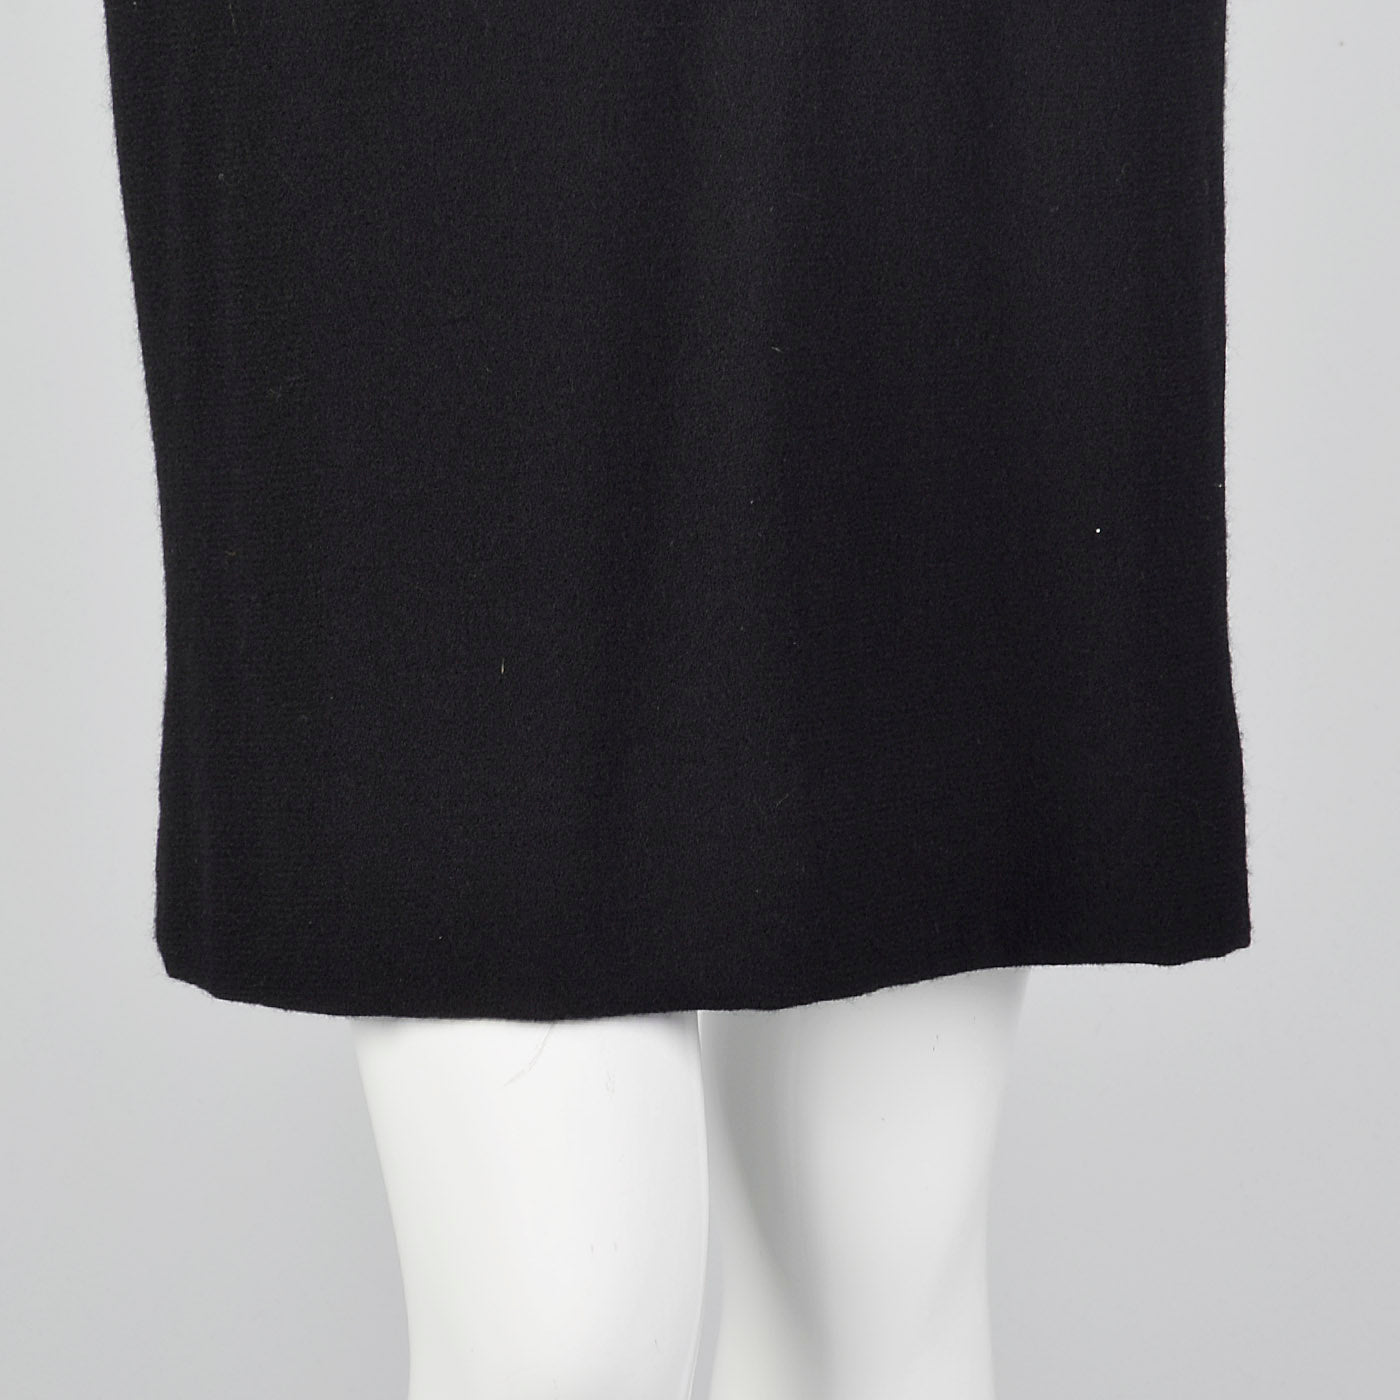 1980s Bill Blass Black Wool Pencil Dress